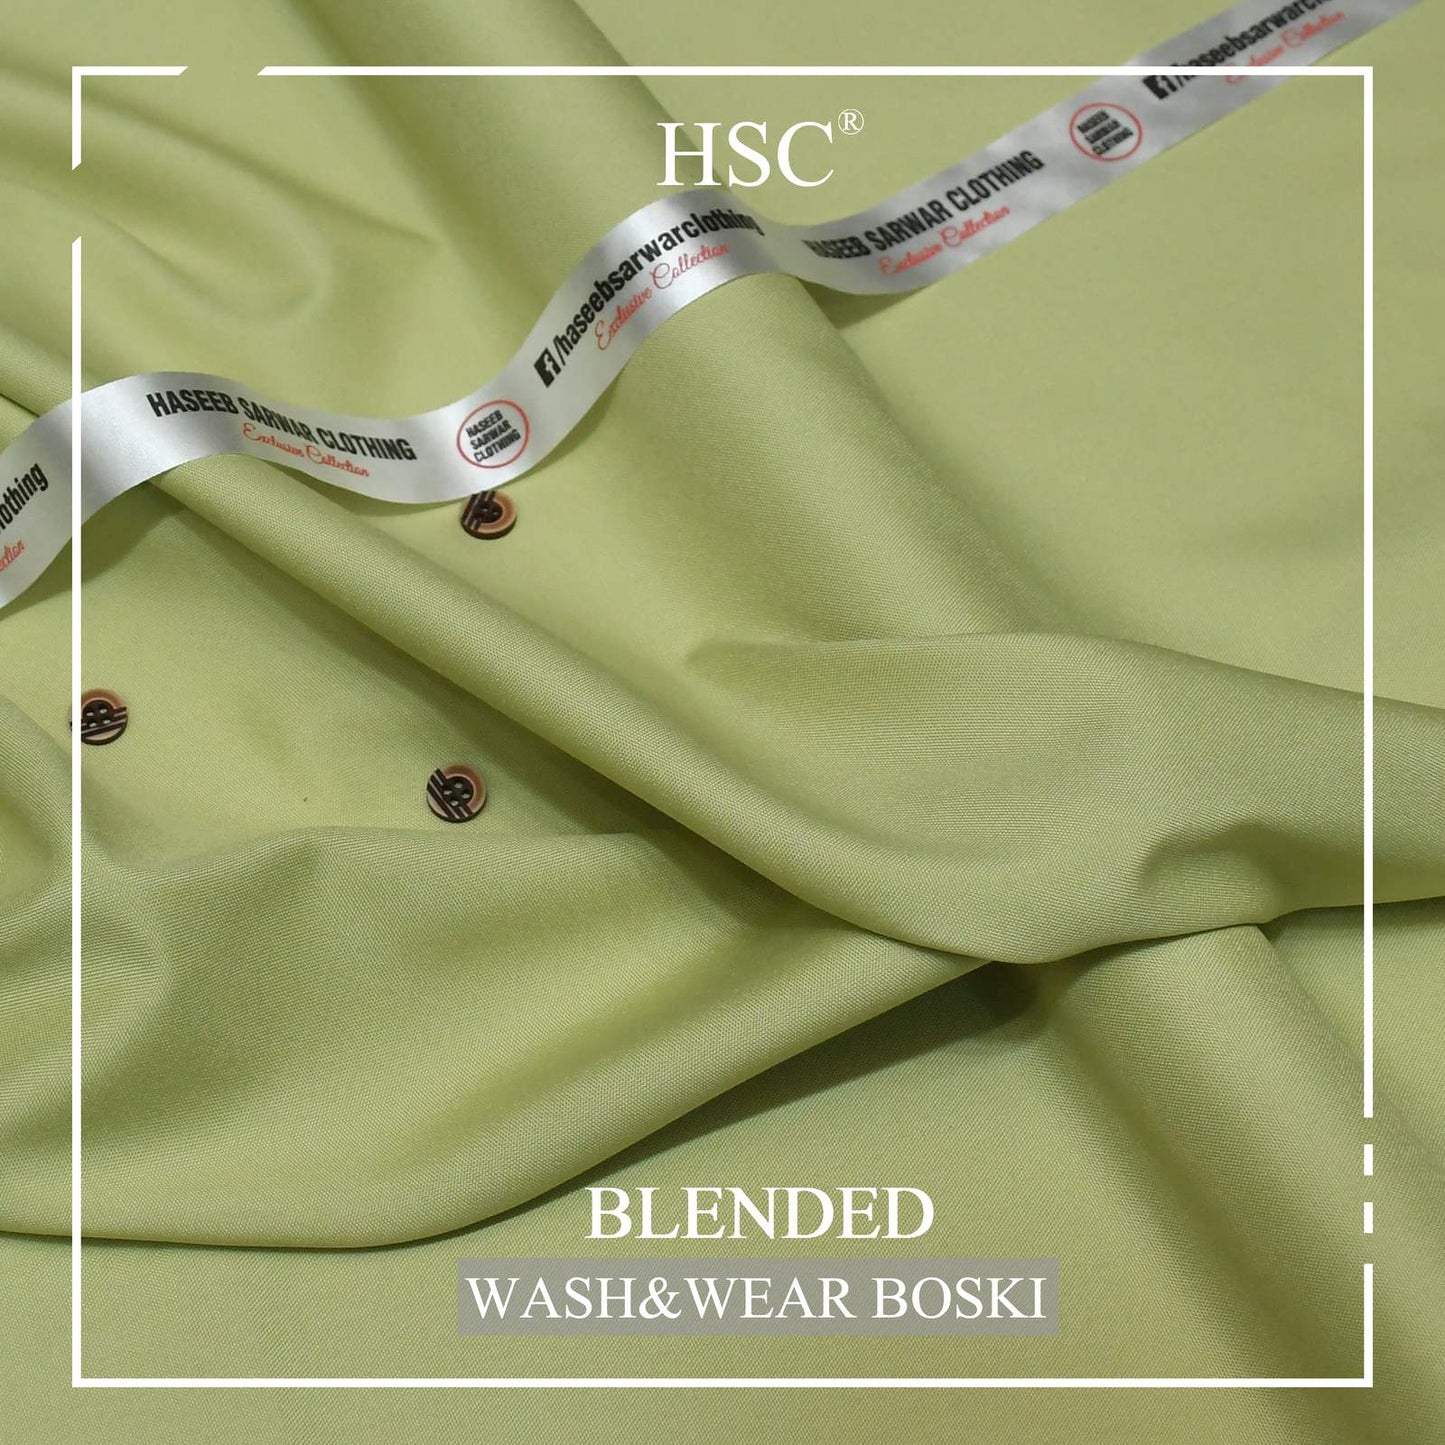 Blended Wash&Wear Boski (Buy 1 Get 1 Free Offer!) - WB10 HSC